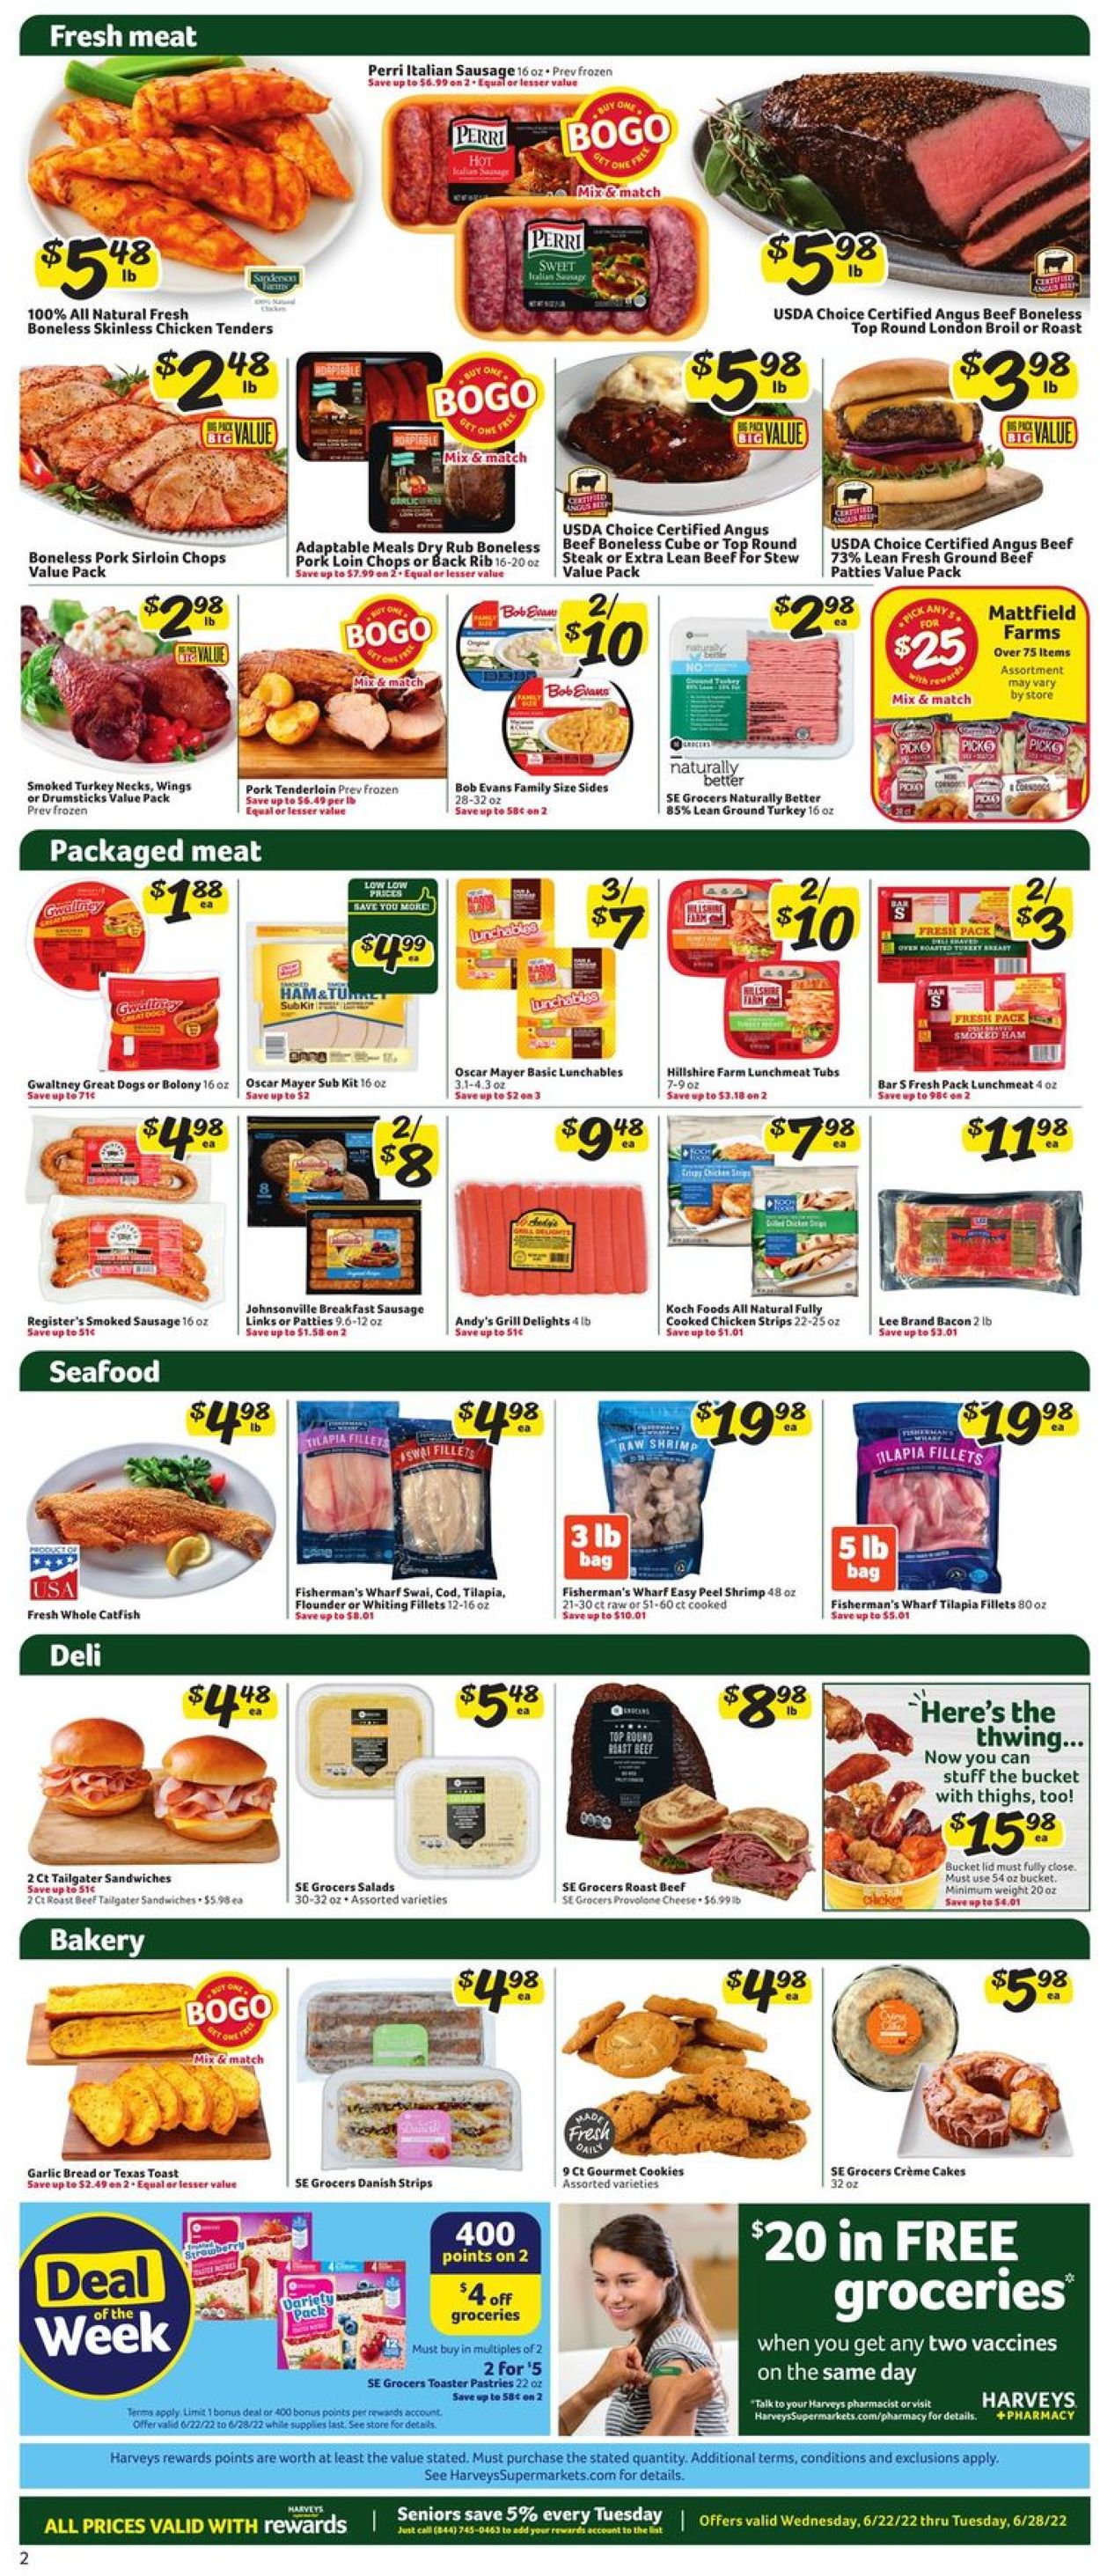 Catalogue Harveys Supermarket from 06/22/2022